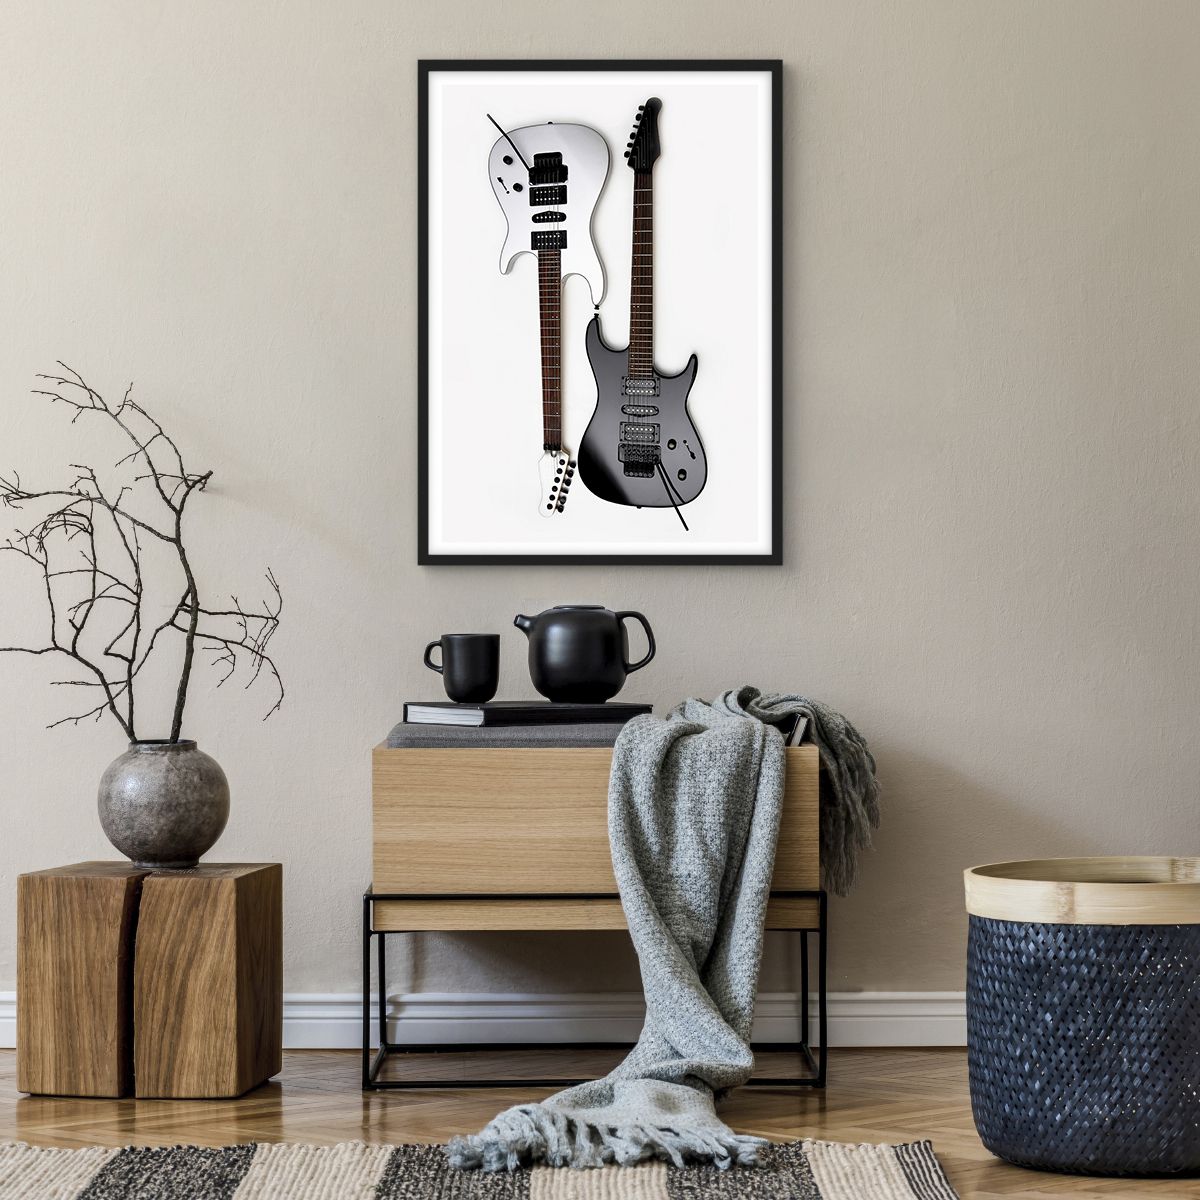 Poster in einem schwarzem Rahmen Musik, Poster in einem schwarzem Rahmen Elektrische Gitarre, Poster in einem schwarzem Rahmen Musikinstrument, Poster in einem schwarzem Rahmen Kultur, Poster in einem schwarzem Rahmen Klang